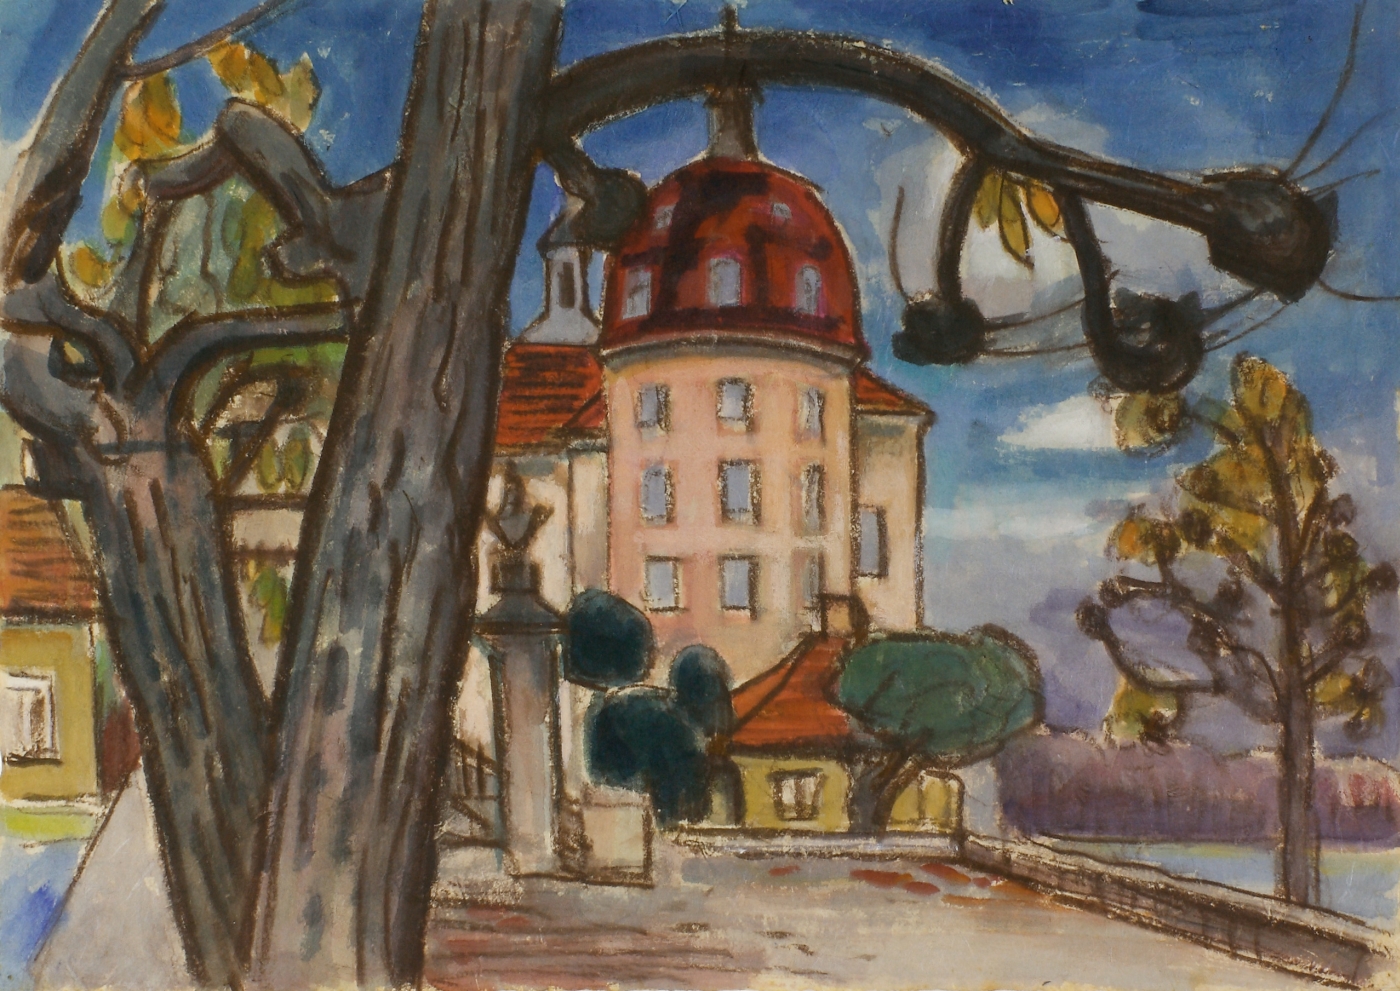 Auktionshaus Quentin Berlin Wilhelm  Paul  SchloÃ Moritzburg. Um 1940-50